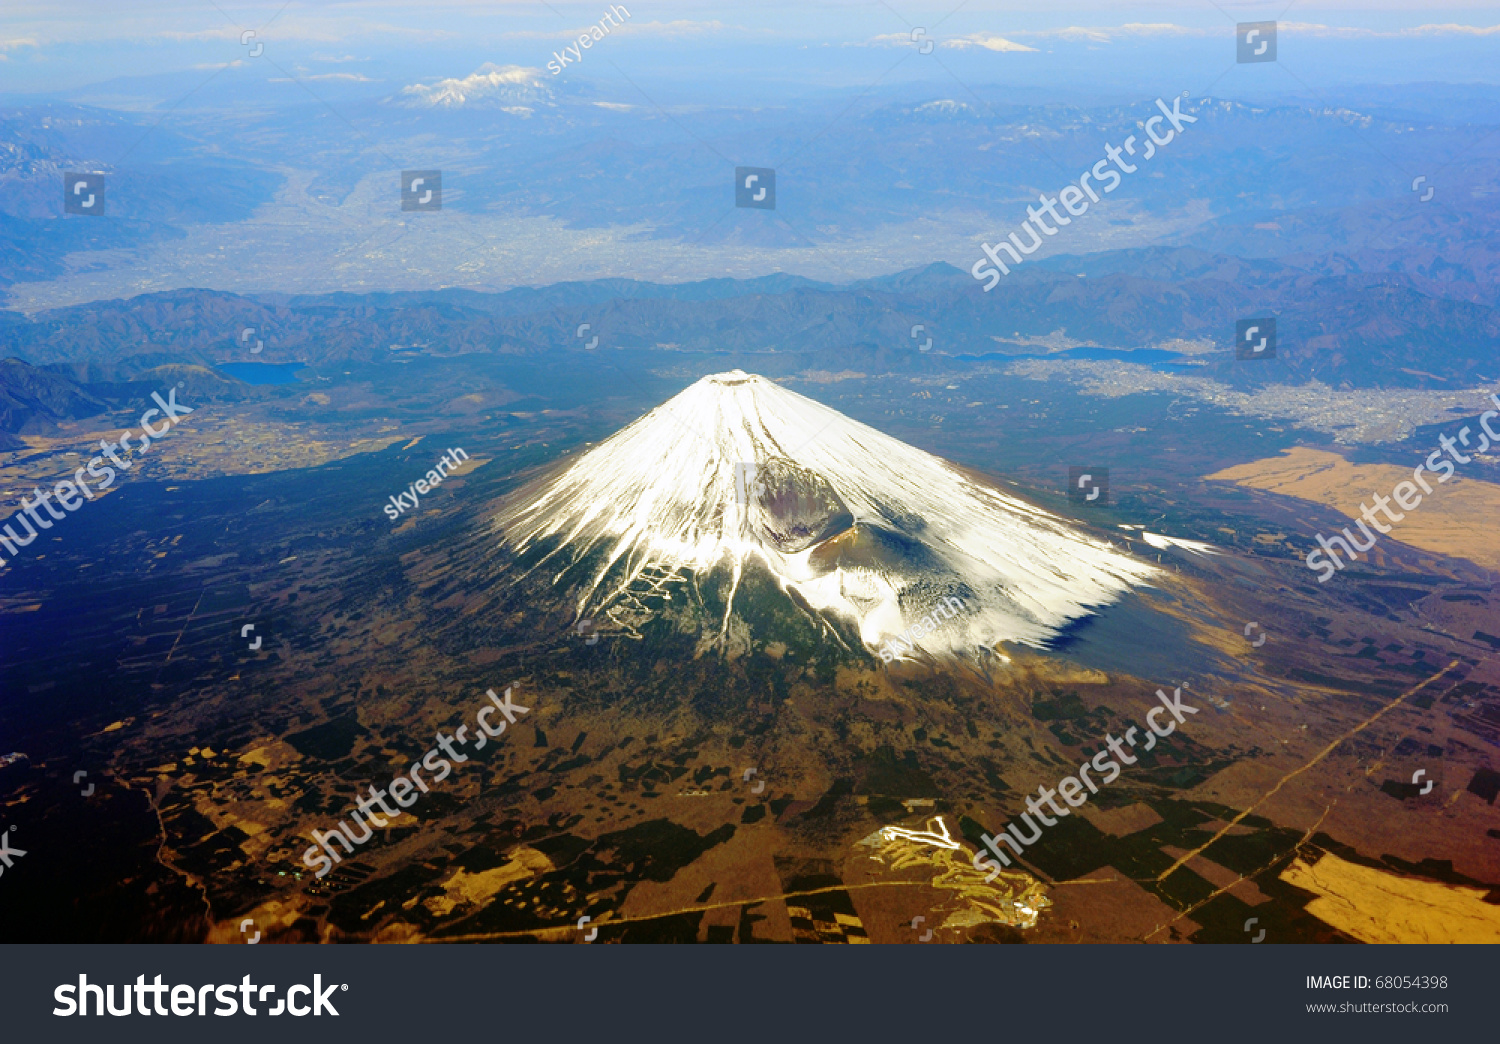 Mt Fuji Bird Eye View Stock Photo 68054398 | Shutterstock